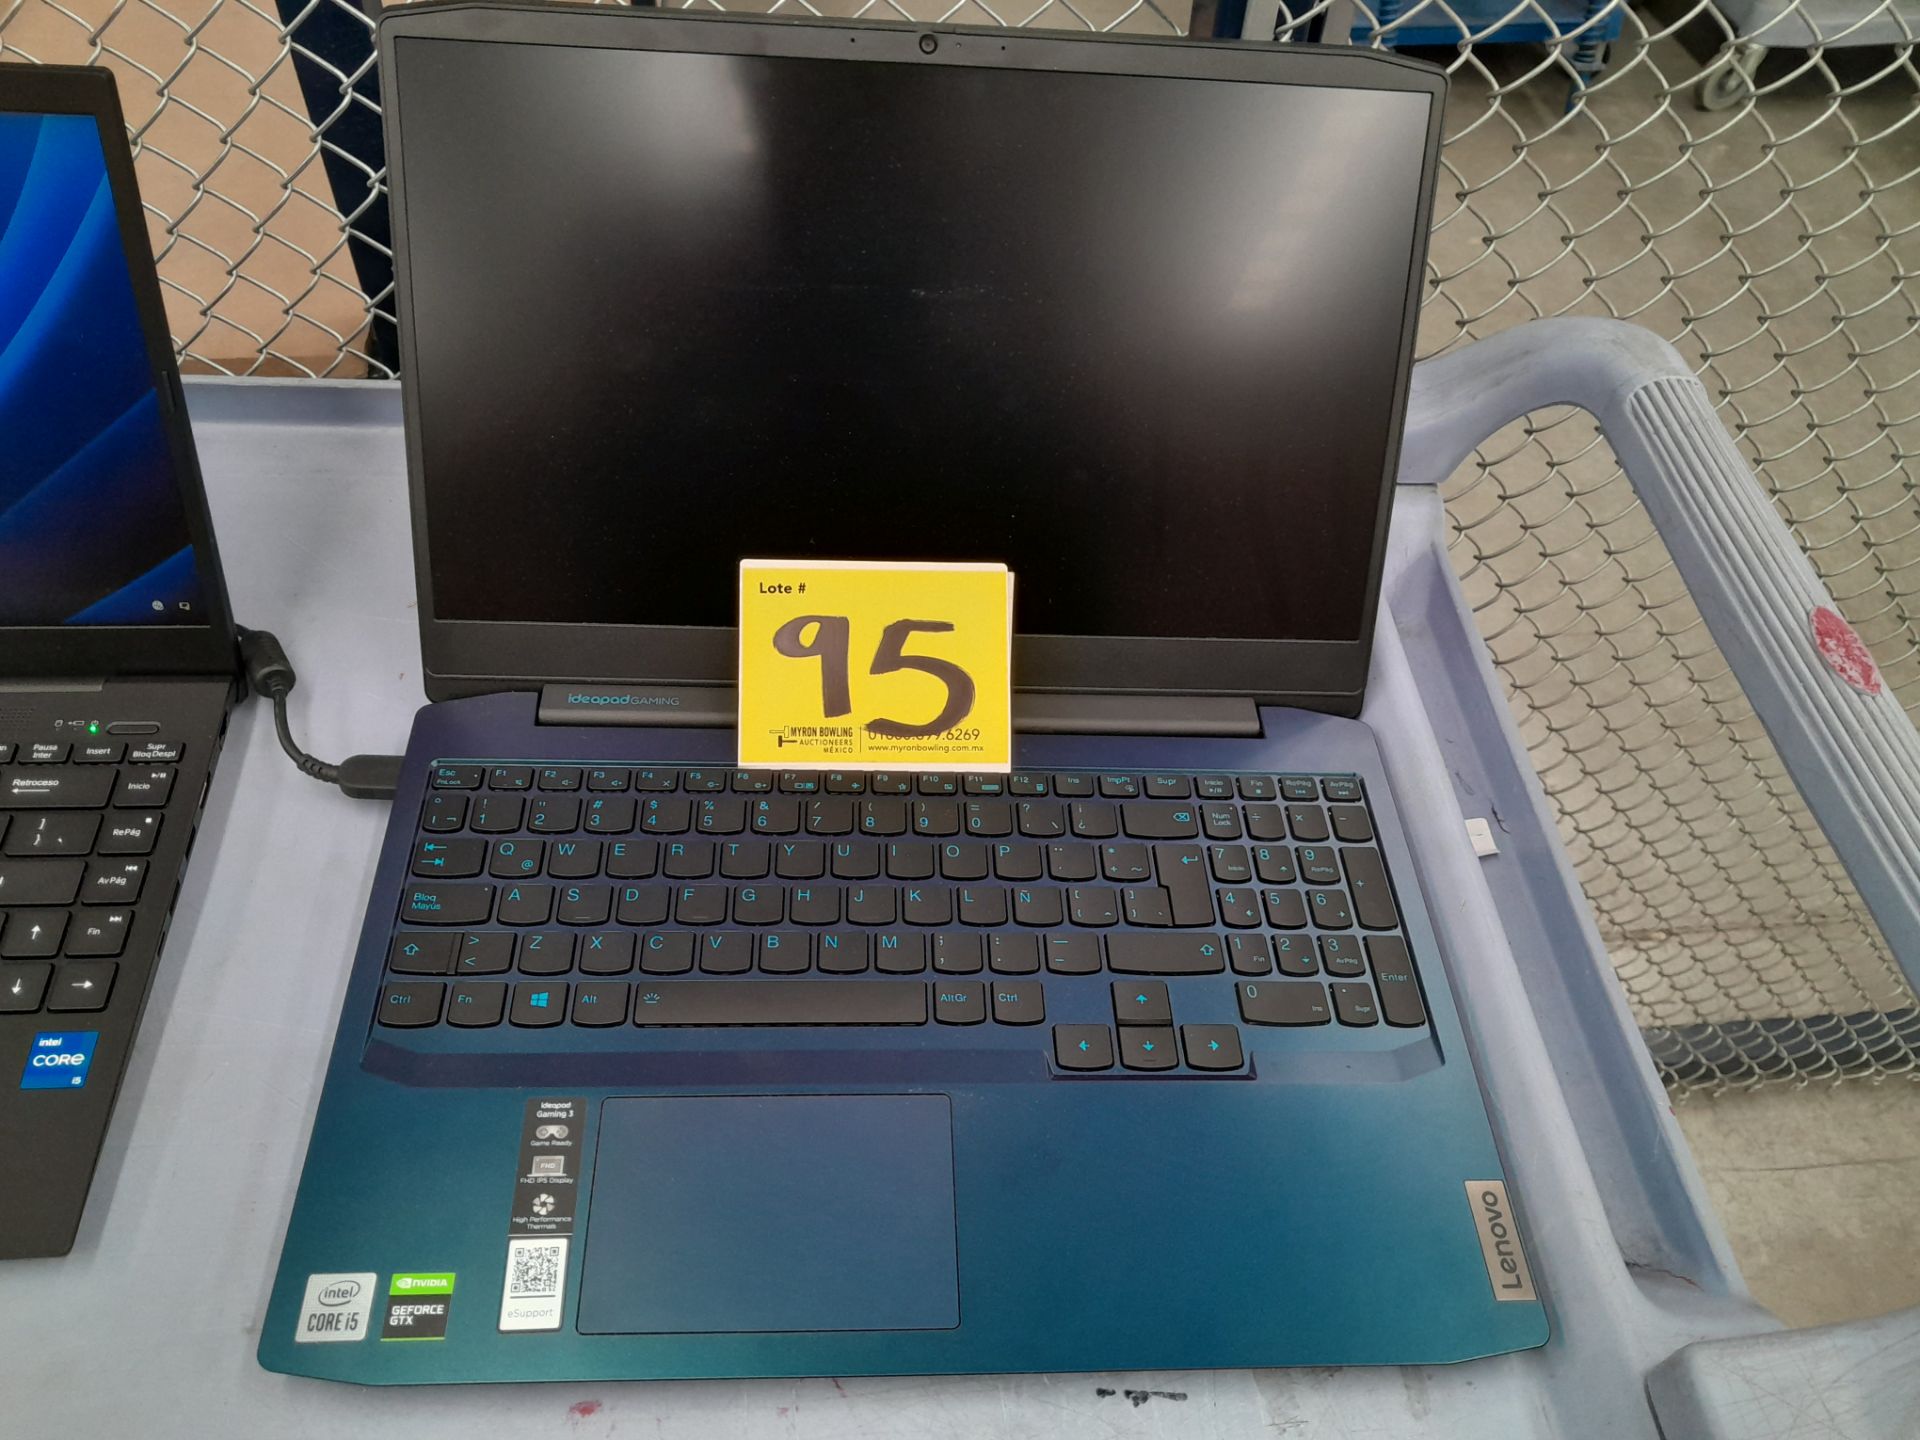 Lote de 2 laptops contiene: 1 Laptop Marca LENOVO, Modelo 81Y4, RAM 8GB, almacenamiento 1 TB, Proce - Image 8 of 13